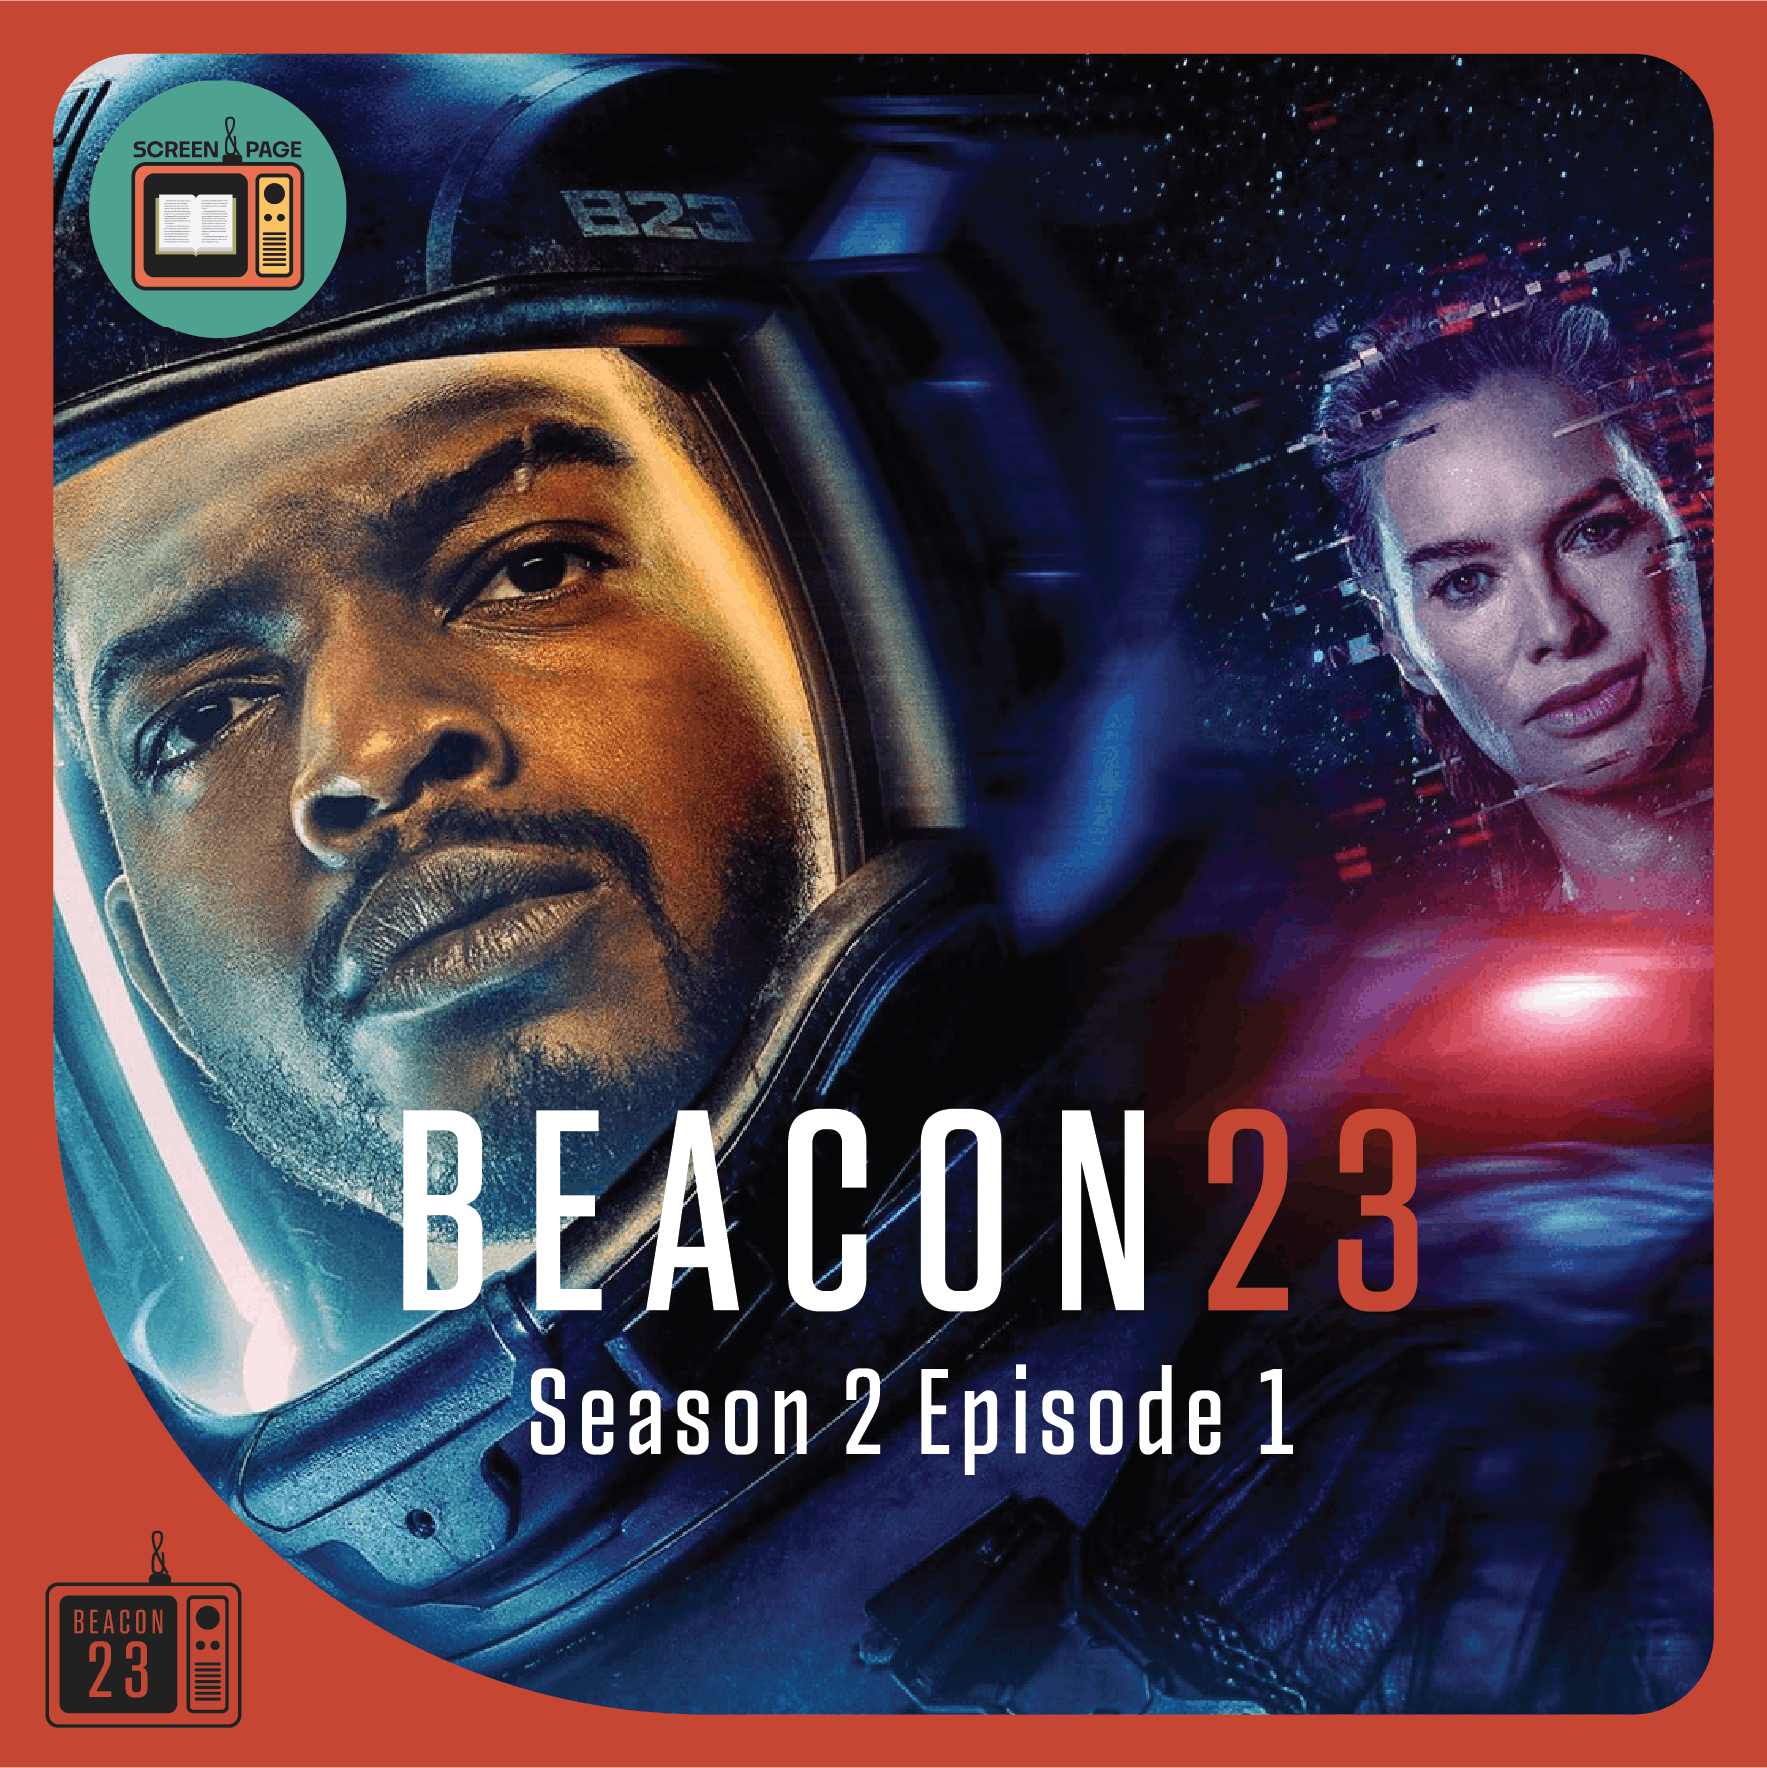 Beacon 23 Season 2 Episode 1 recap "Godspeed"